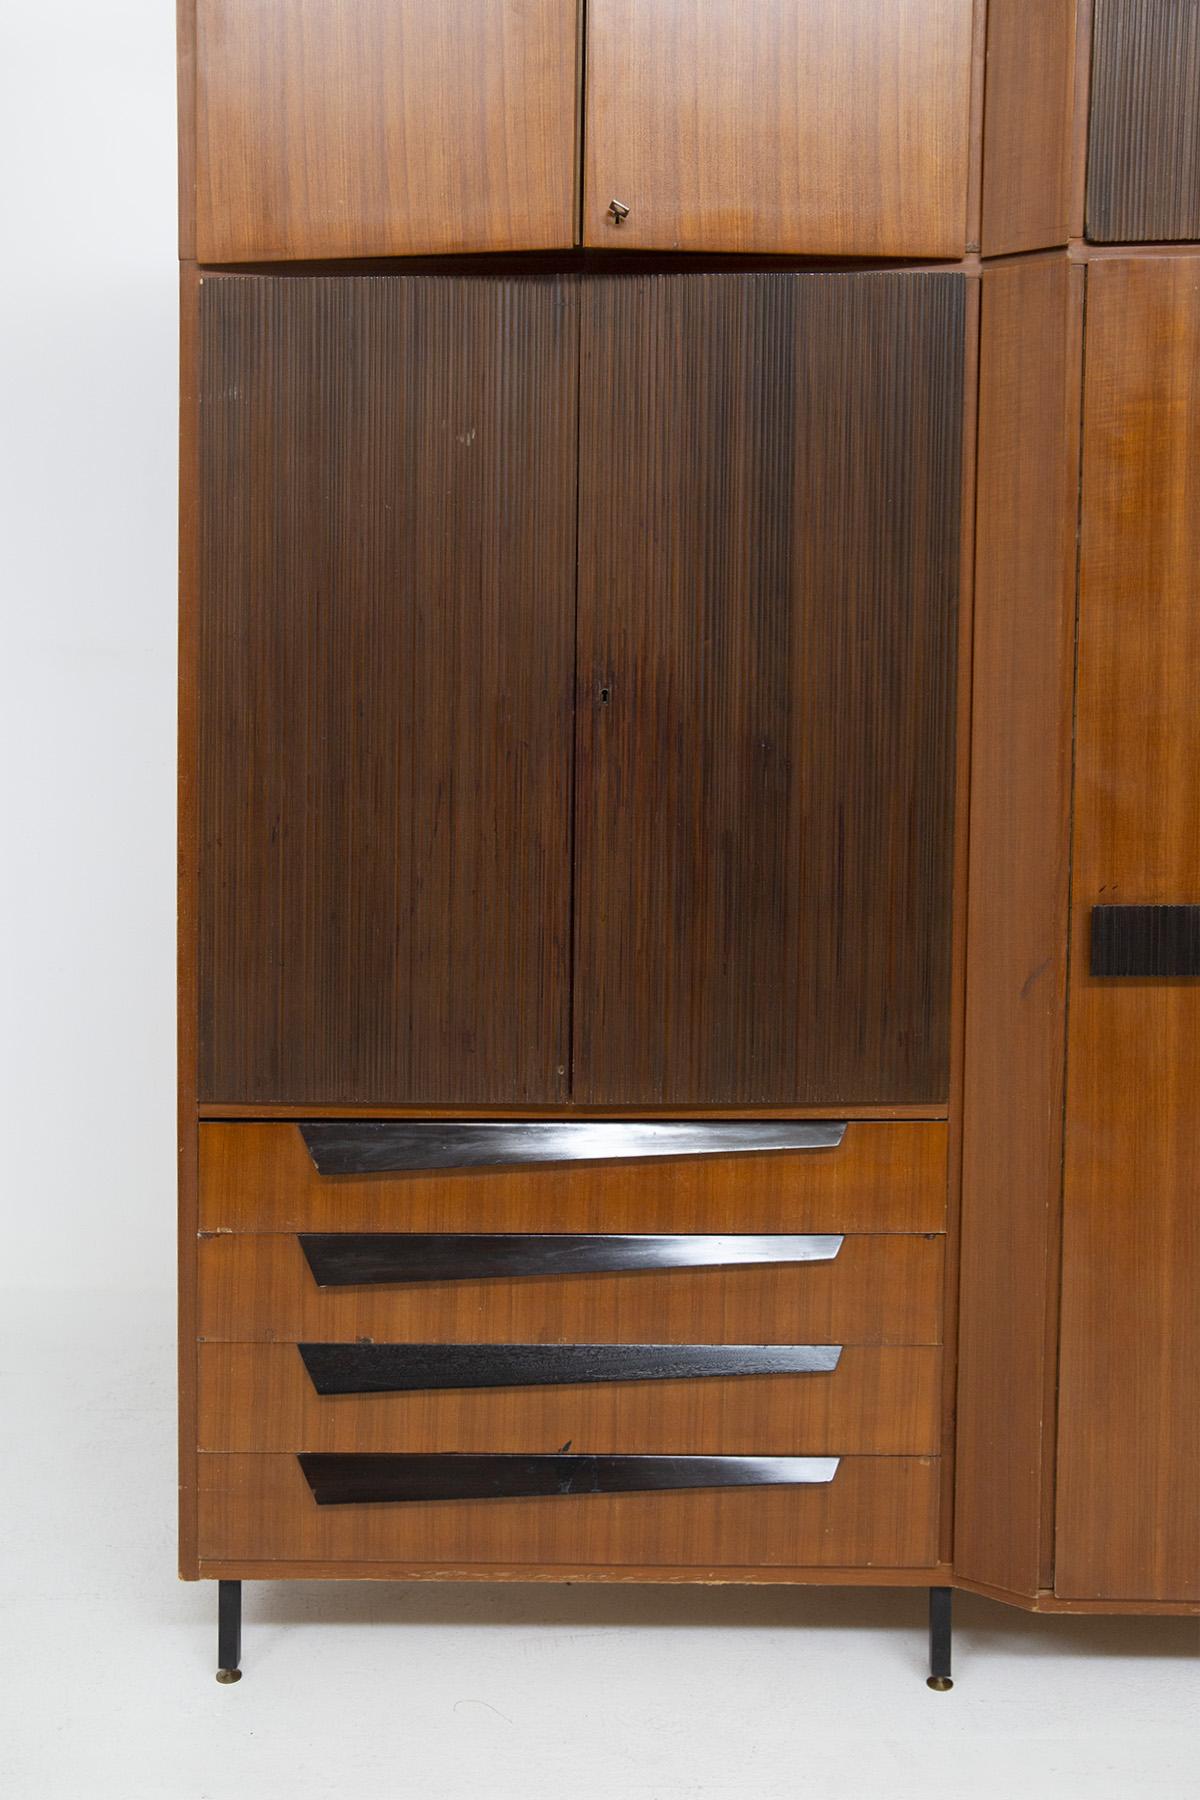 Ce meuble important a été fabriqué dans les années 50 par des artisans italiens. Elle a été exposée à La Permanente Mobili Cantù. Ce magnifique meuble est fabriqué en noyer fin et en grissinato : le bois le plus foncé est le grissinato et il est